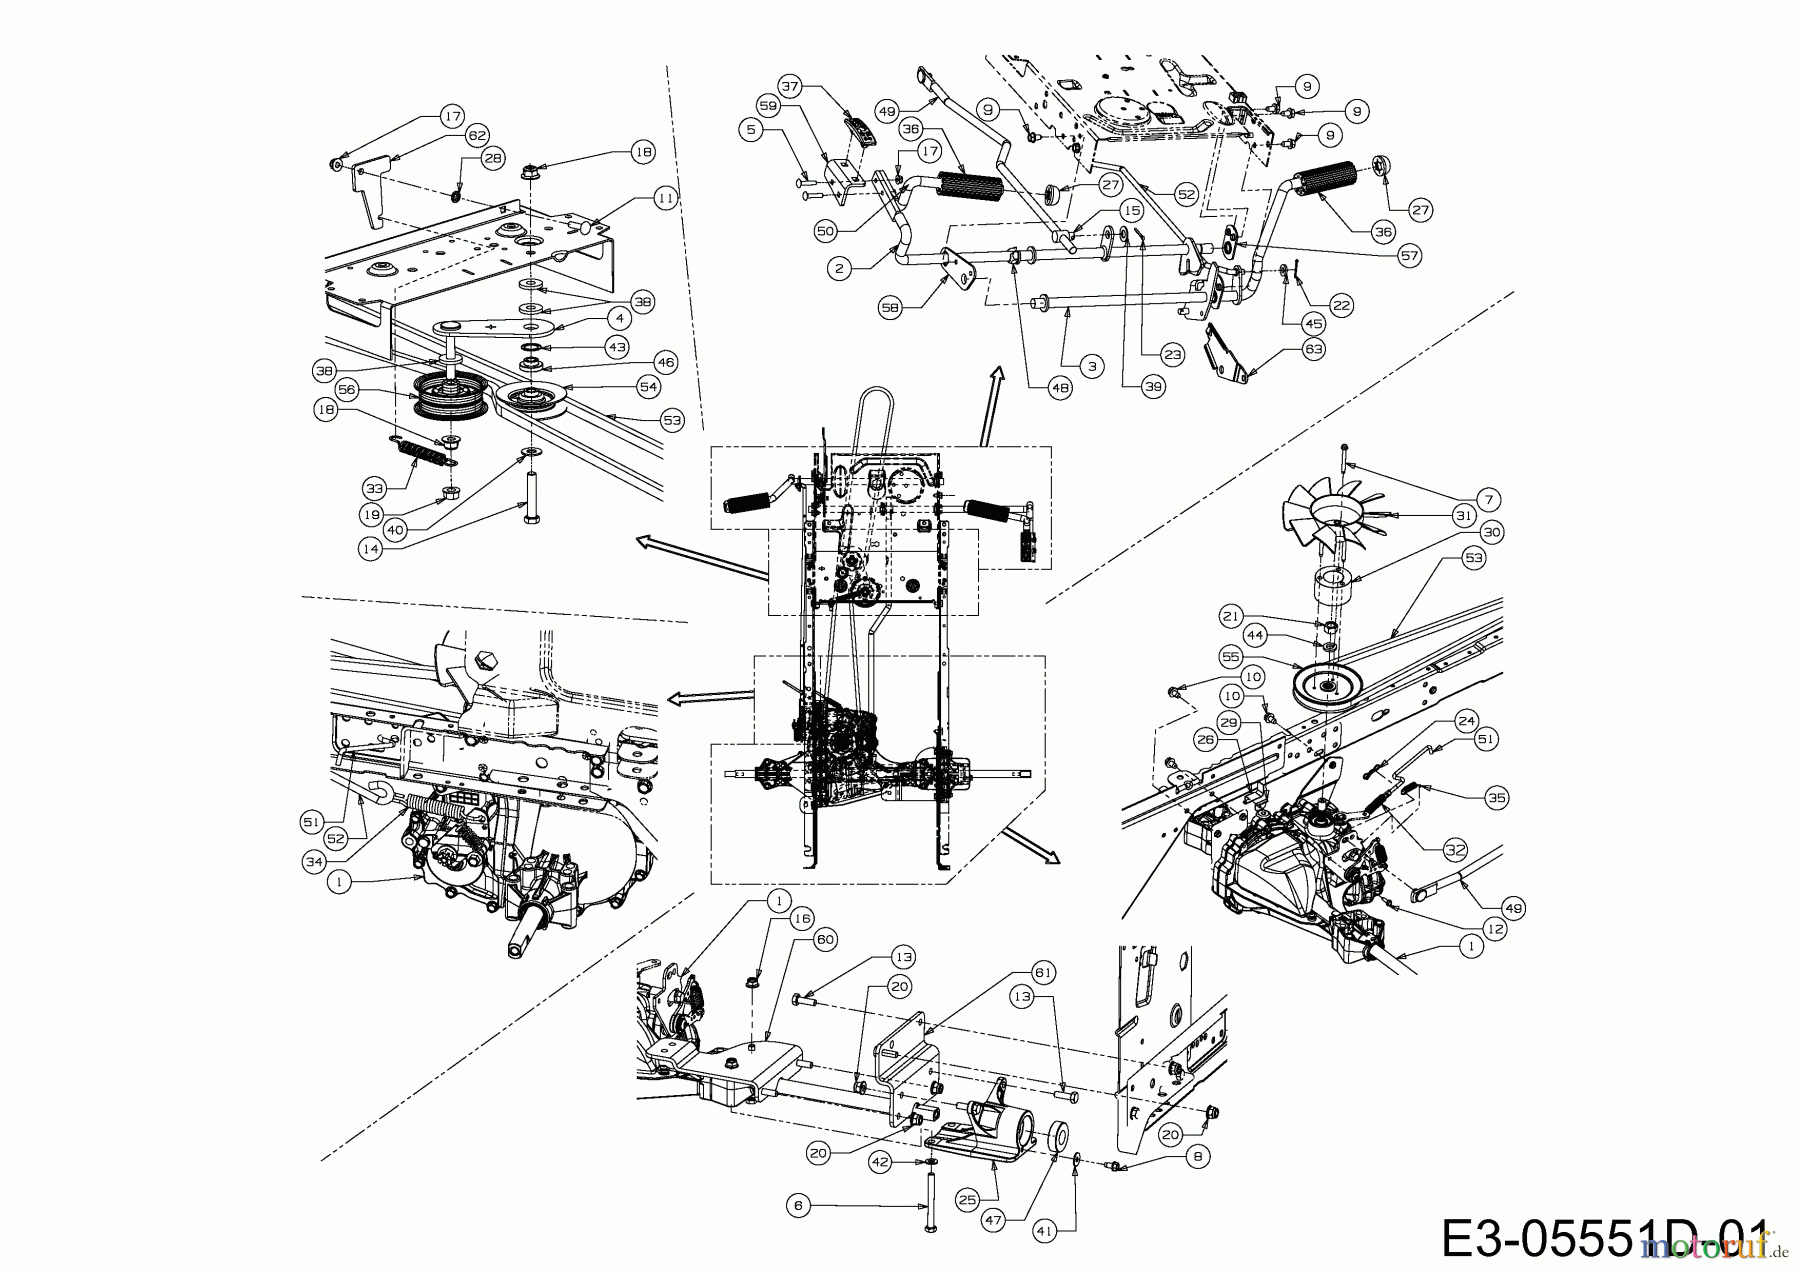  B Power Tracteurs de pelouse BT 155-92 AH 2 13HM71KE648  (2014) Entraînement de roulement